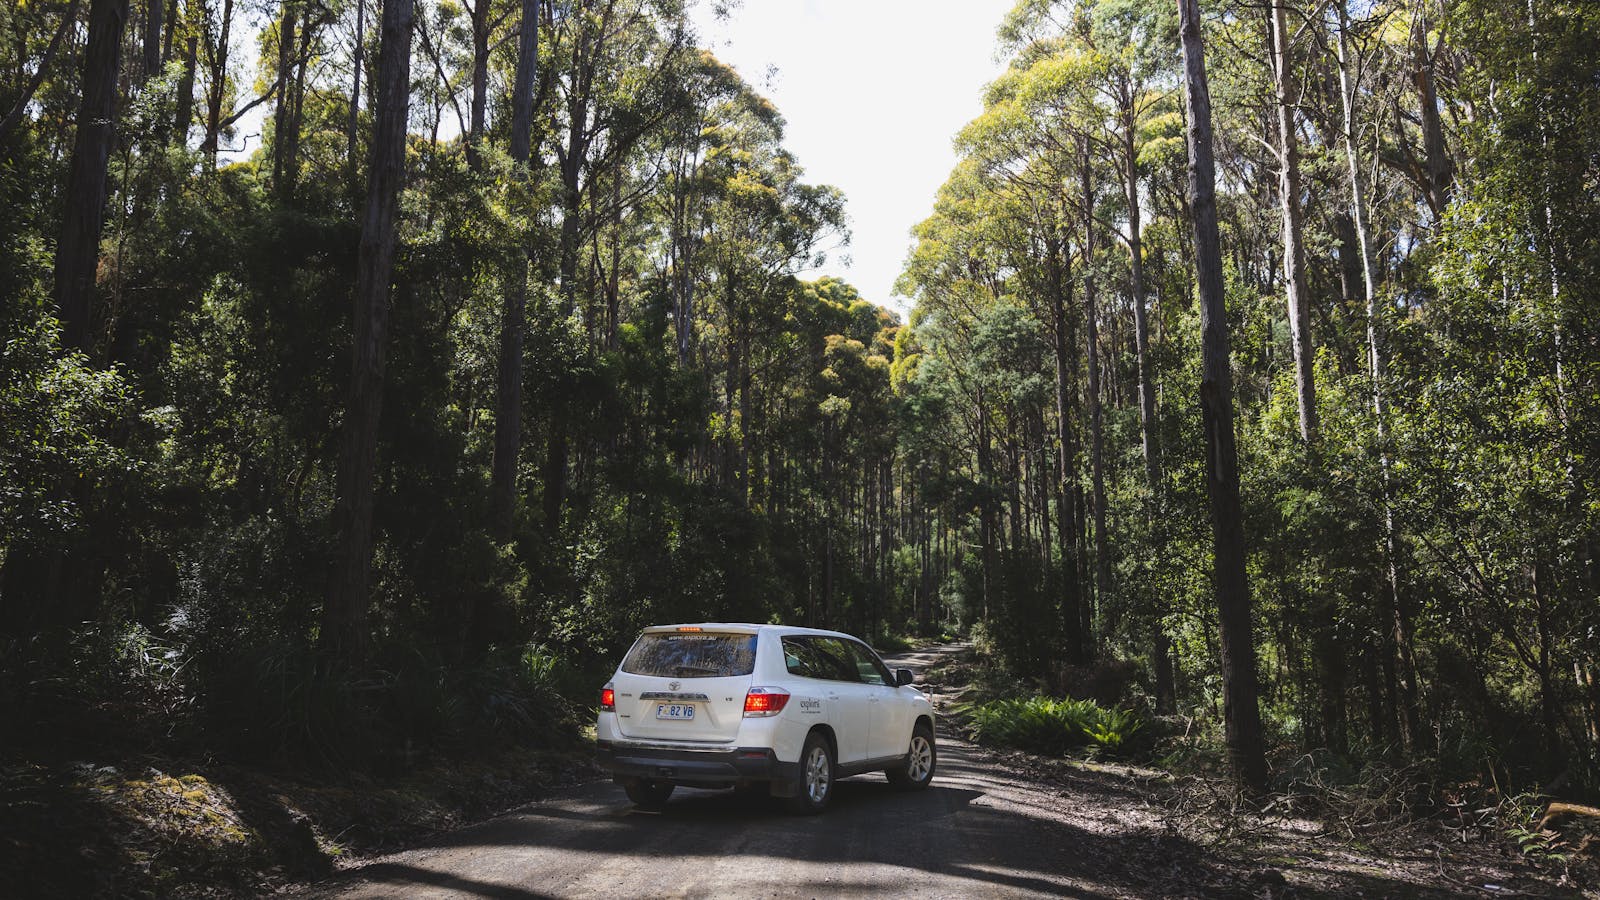 Explora Car & Camping Gear Rental in Hobart, Tasmania